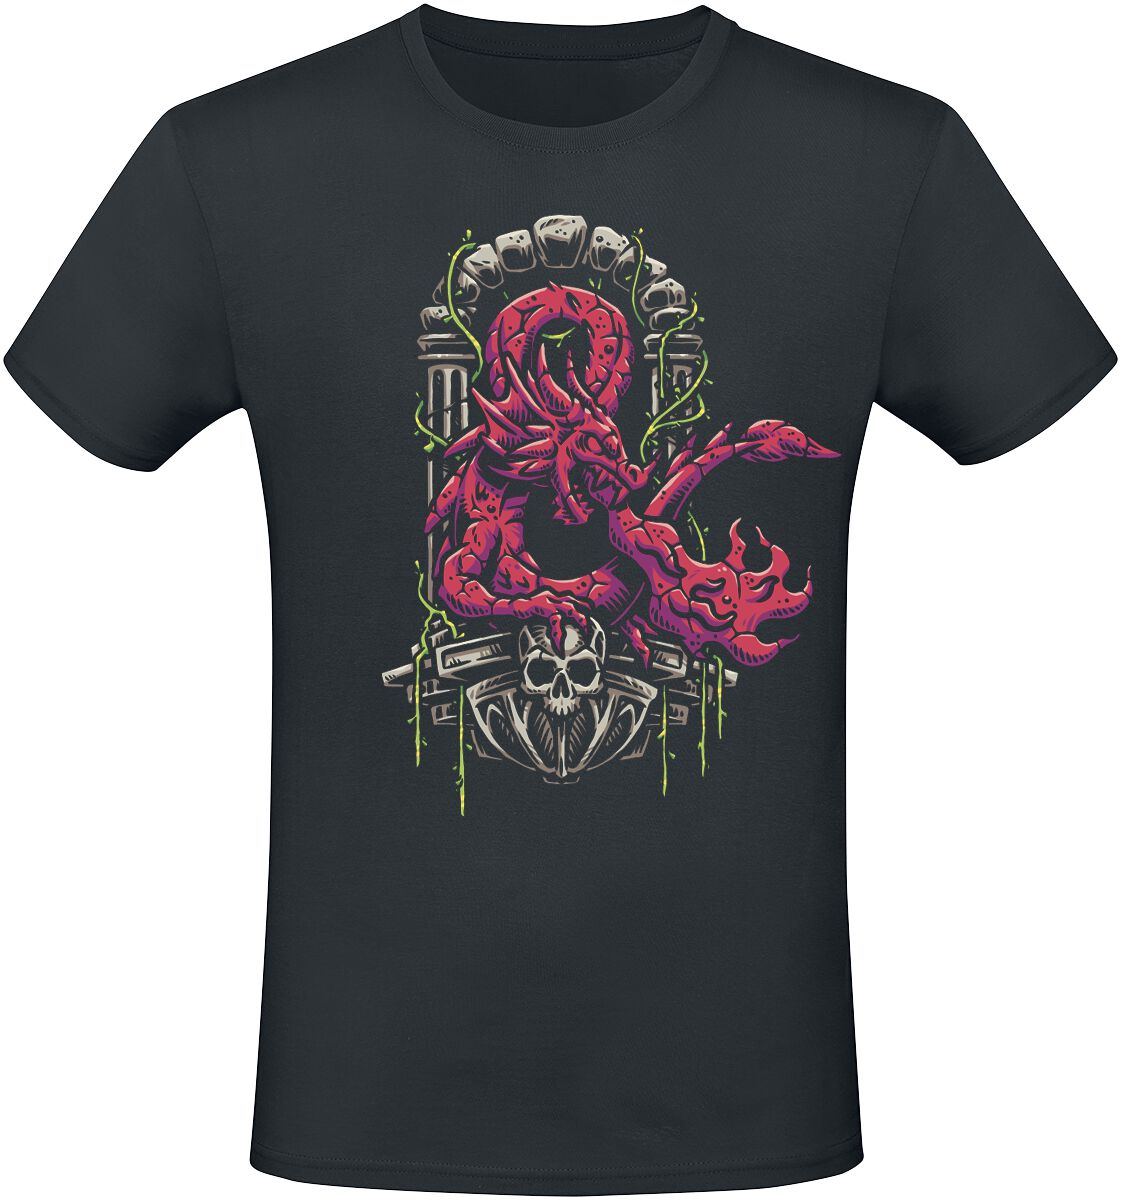 Dungeons and Dragons - Gaming T-Shirt - Ampersand Dragon - S bis XXL - für Männer - Größe L - schwarz  - EMP exklusives Merchandise!